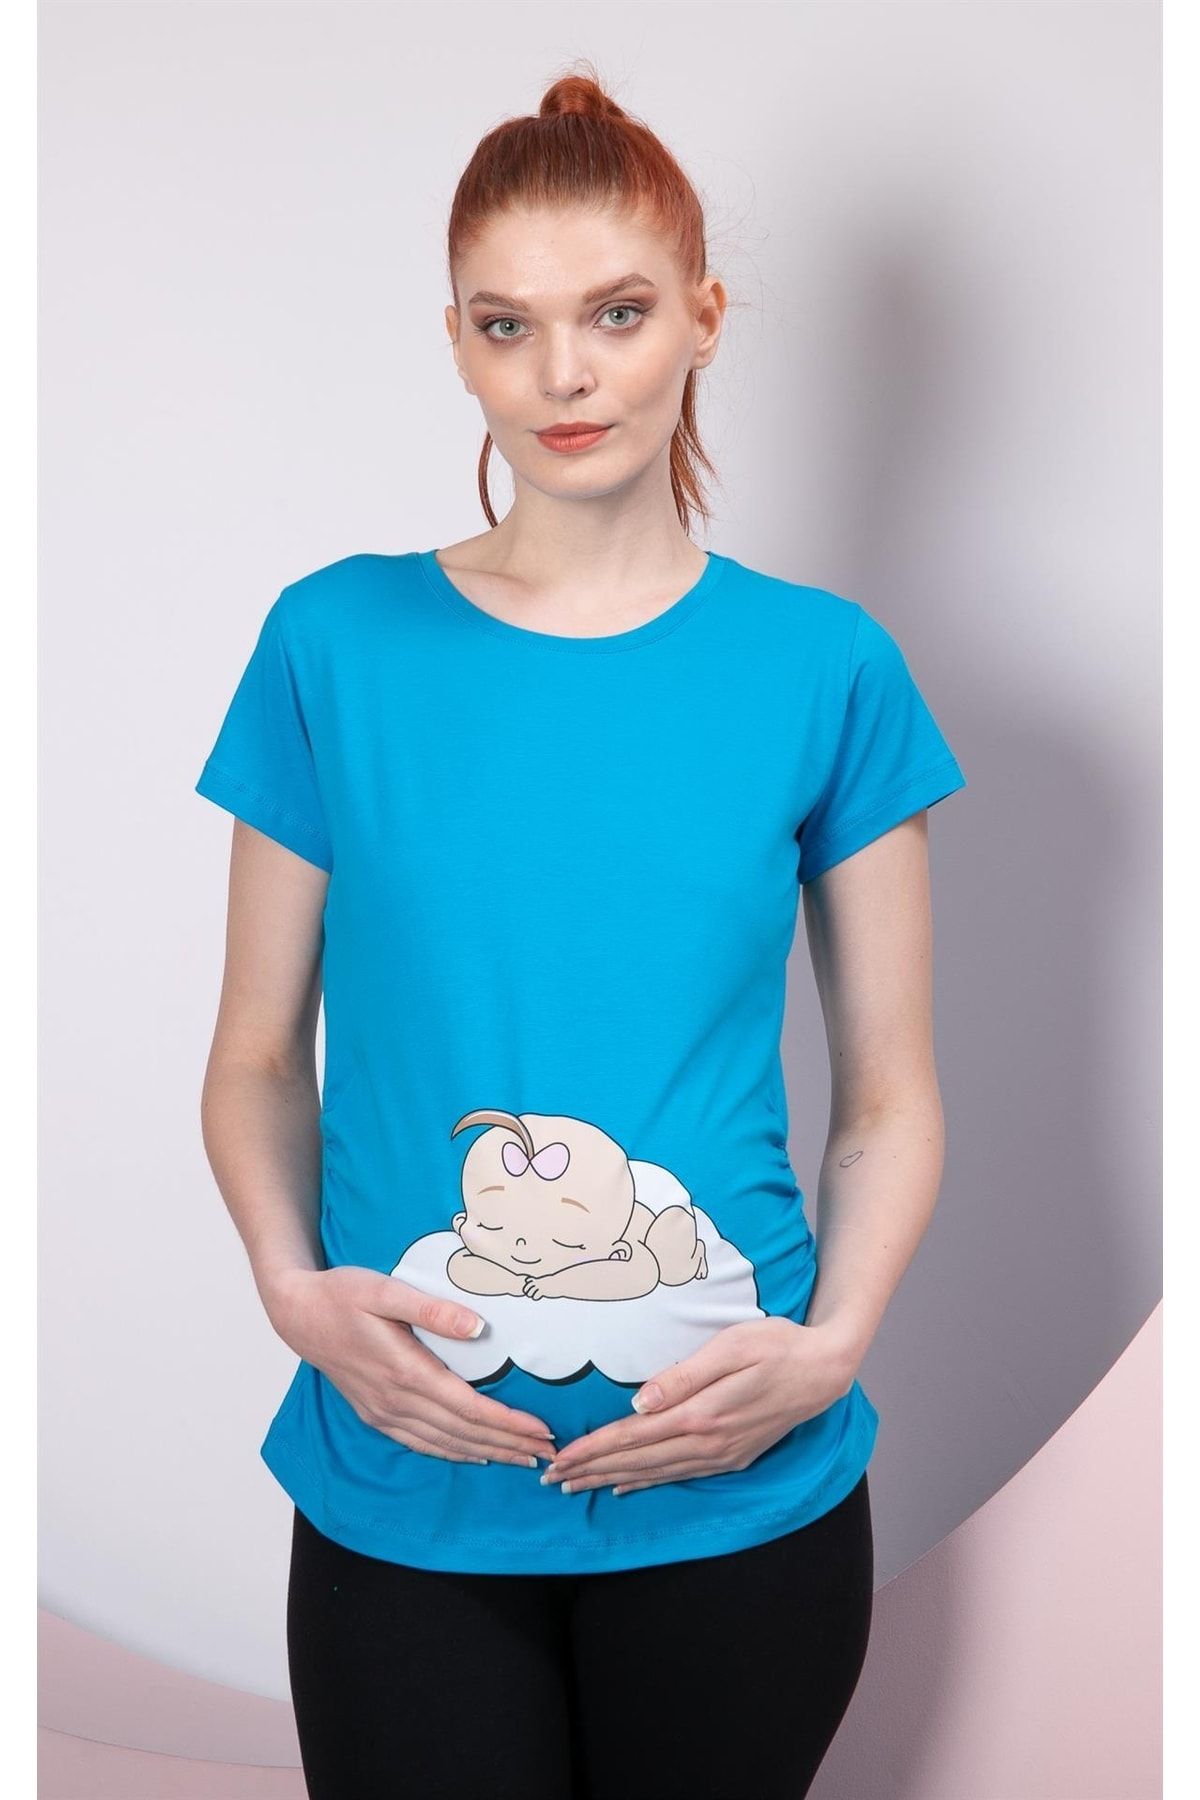 Görsin Hamile Gör&sin Uyuyan Kız Bebek Baskılı Hamile Saks Tişört